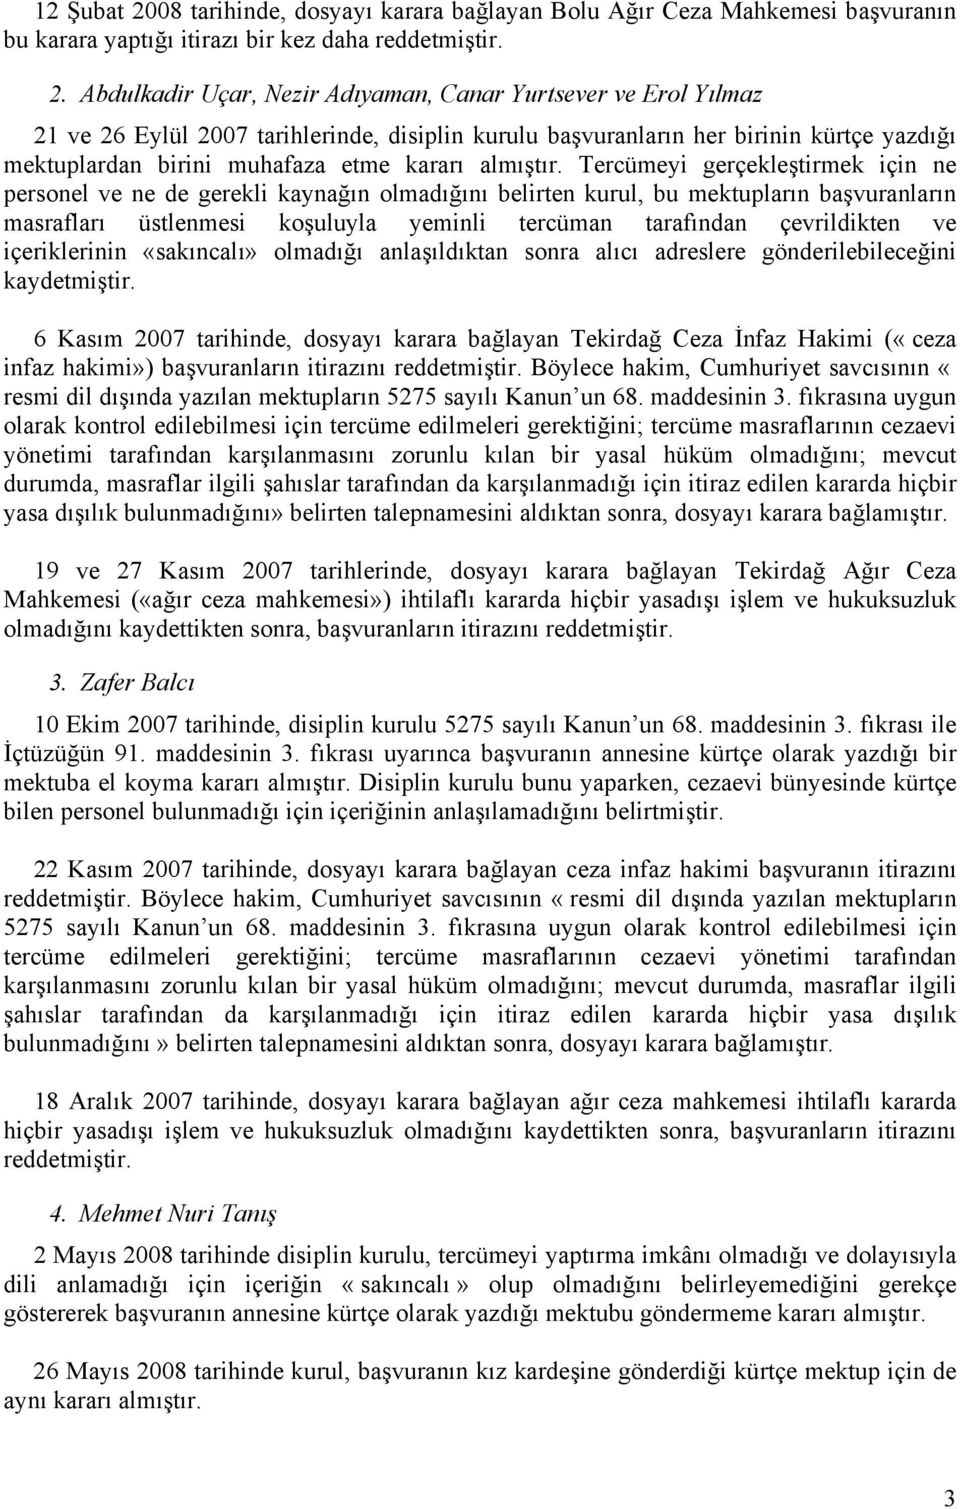 Abdulkadir Uçar, Nezir Adıyaman, Canar Yurtsever ve Erol Yılmaz 21 ve 26 Eylül 2007 tarihlerinde, disiplin kurulu başvuranların her birinin kürtçe yazdığı mektuplardan birini muhafaza etme kararı